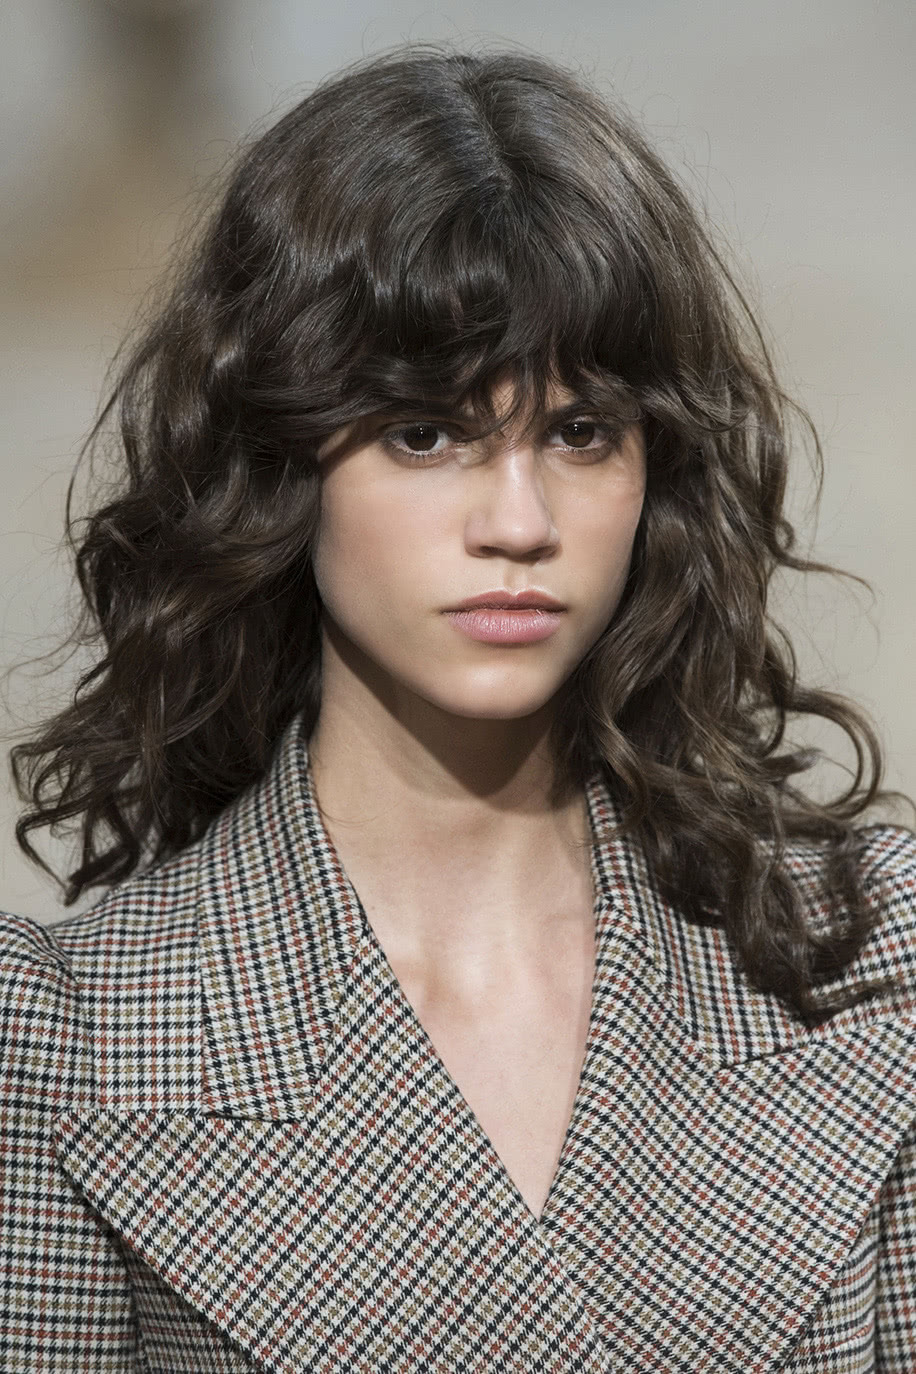 Para um look moderno e fashionista, escolha um corte de cabelo cacheado longo com franja desfiada.